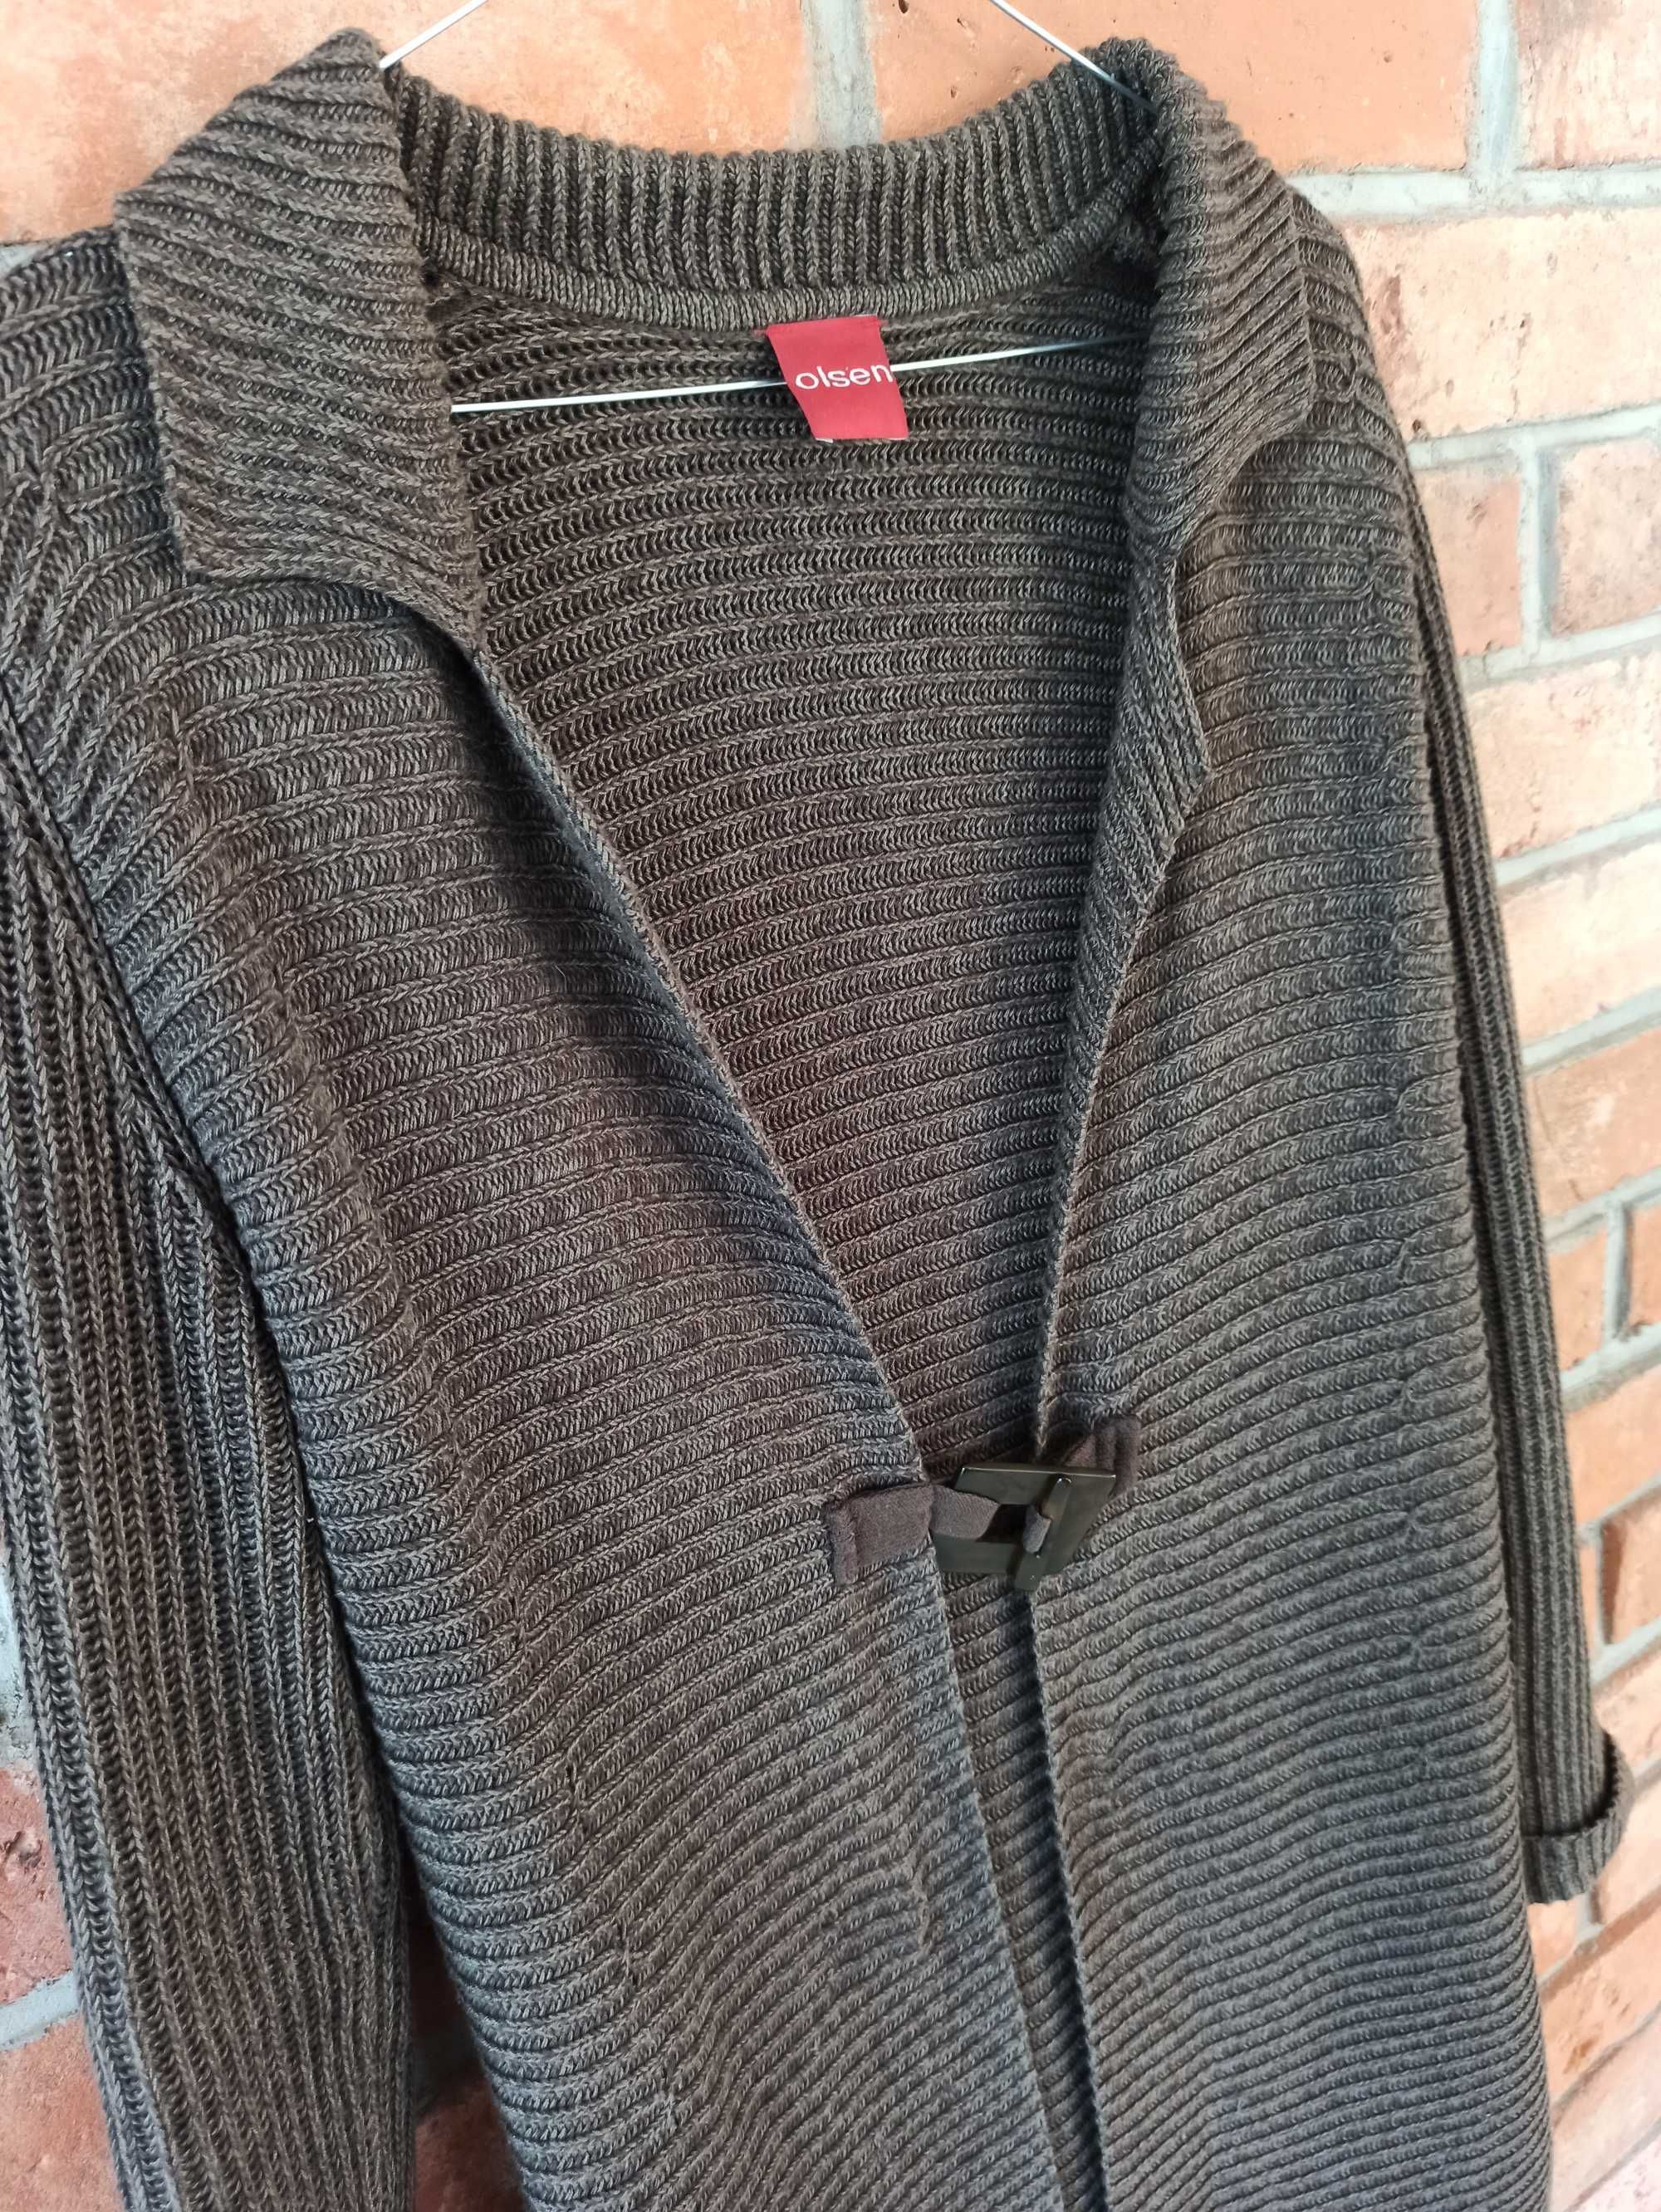 Gruby rozpinany brązowy sweter z firmy Olsen